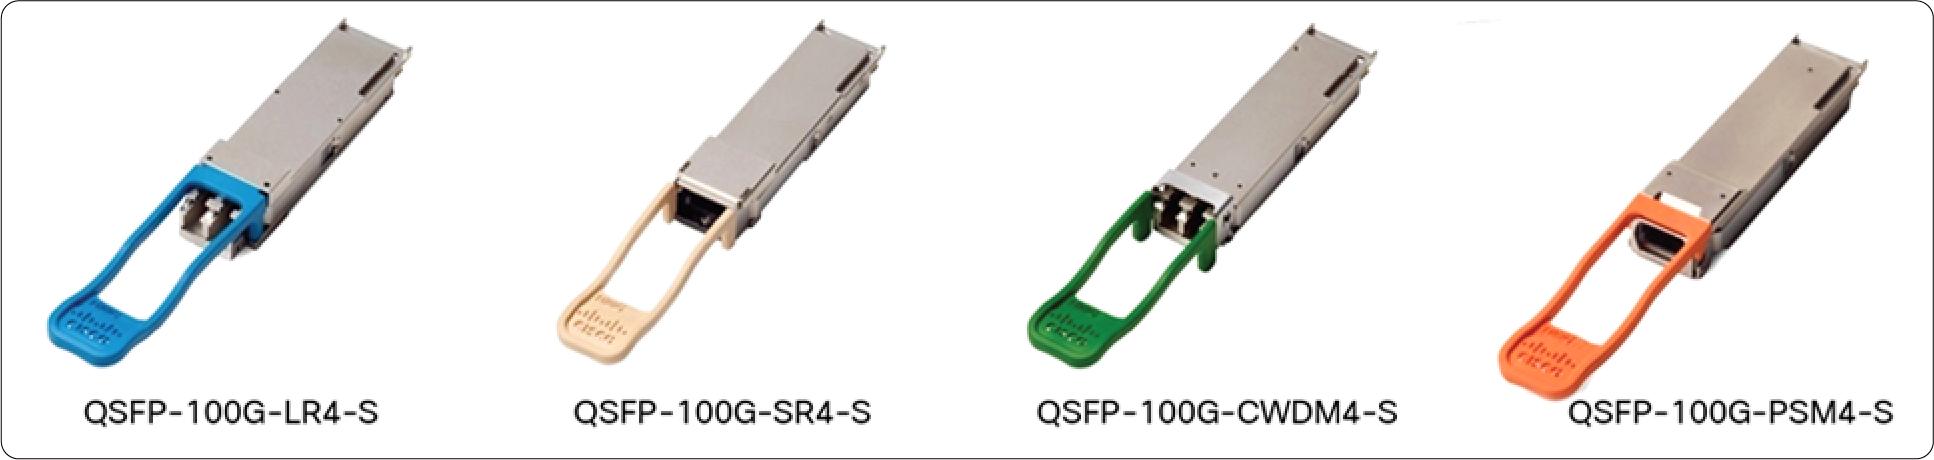 QSFP-100G-AOC20M Cisco 100 Gigabit Modules - Cisco 100GBASE QSFP Modules - 2